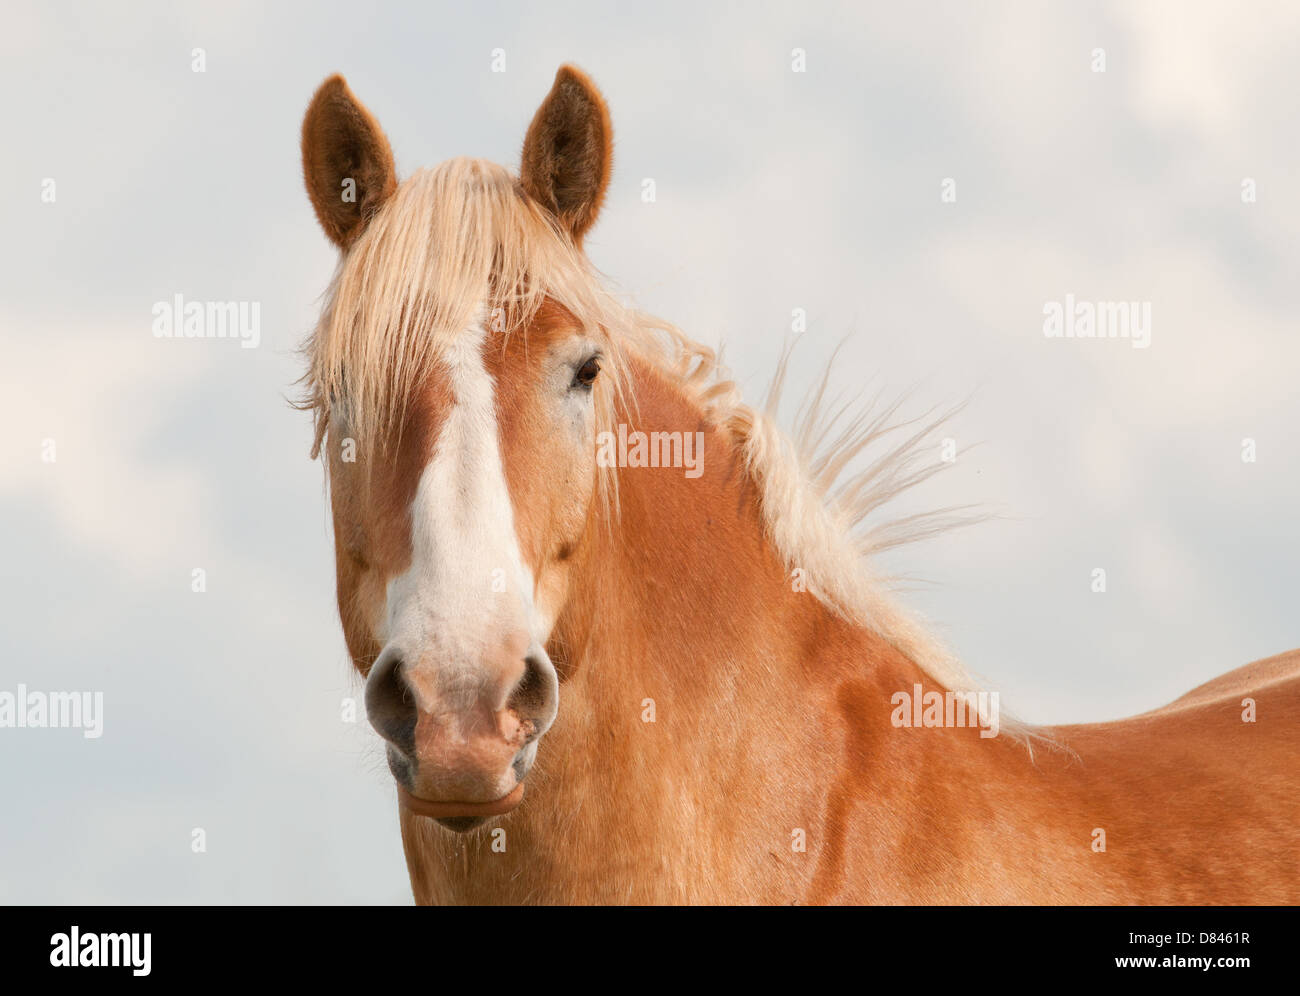 Bella bionda progetto belga cavallo guardando il visore con curiosità con i suoi orecchi; contro il cielo nuvoloso Foto Stock